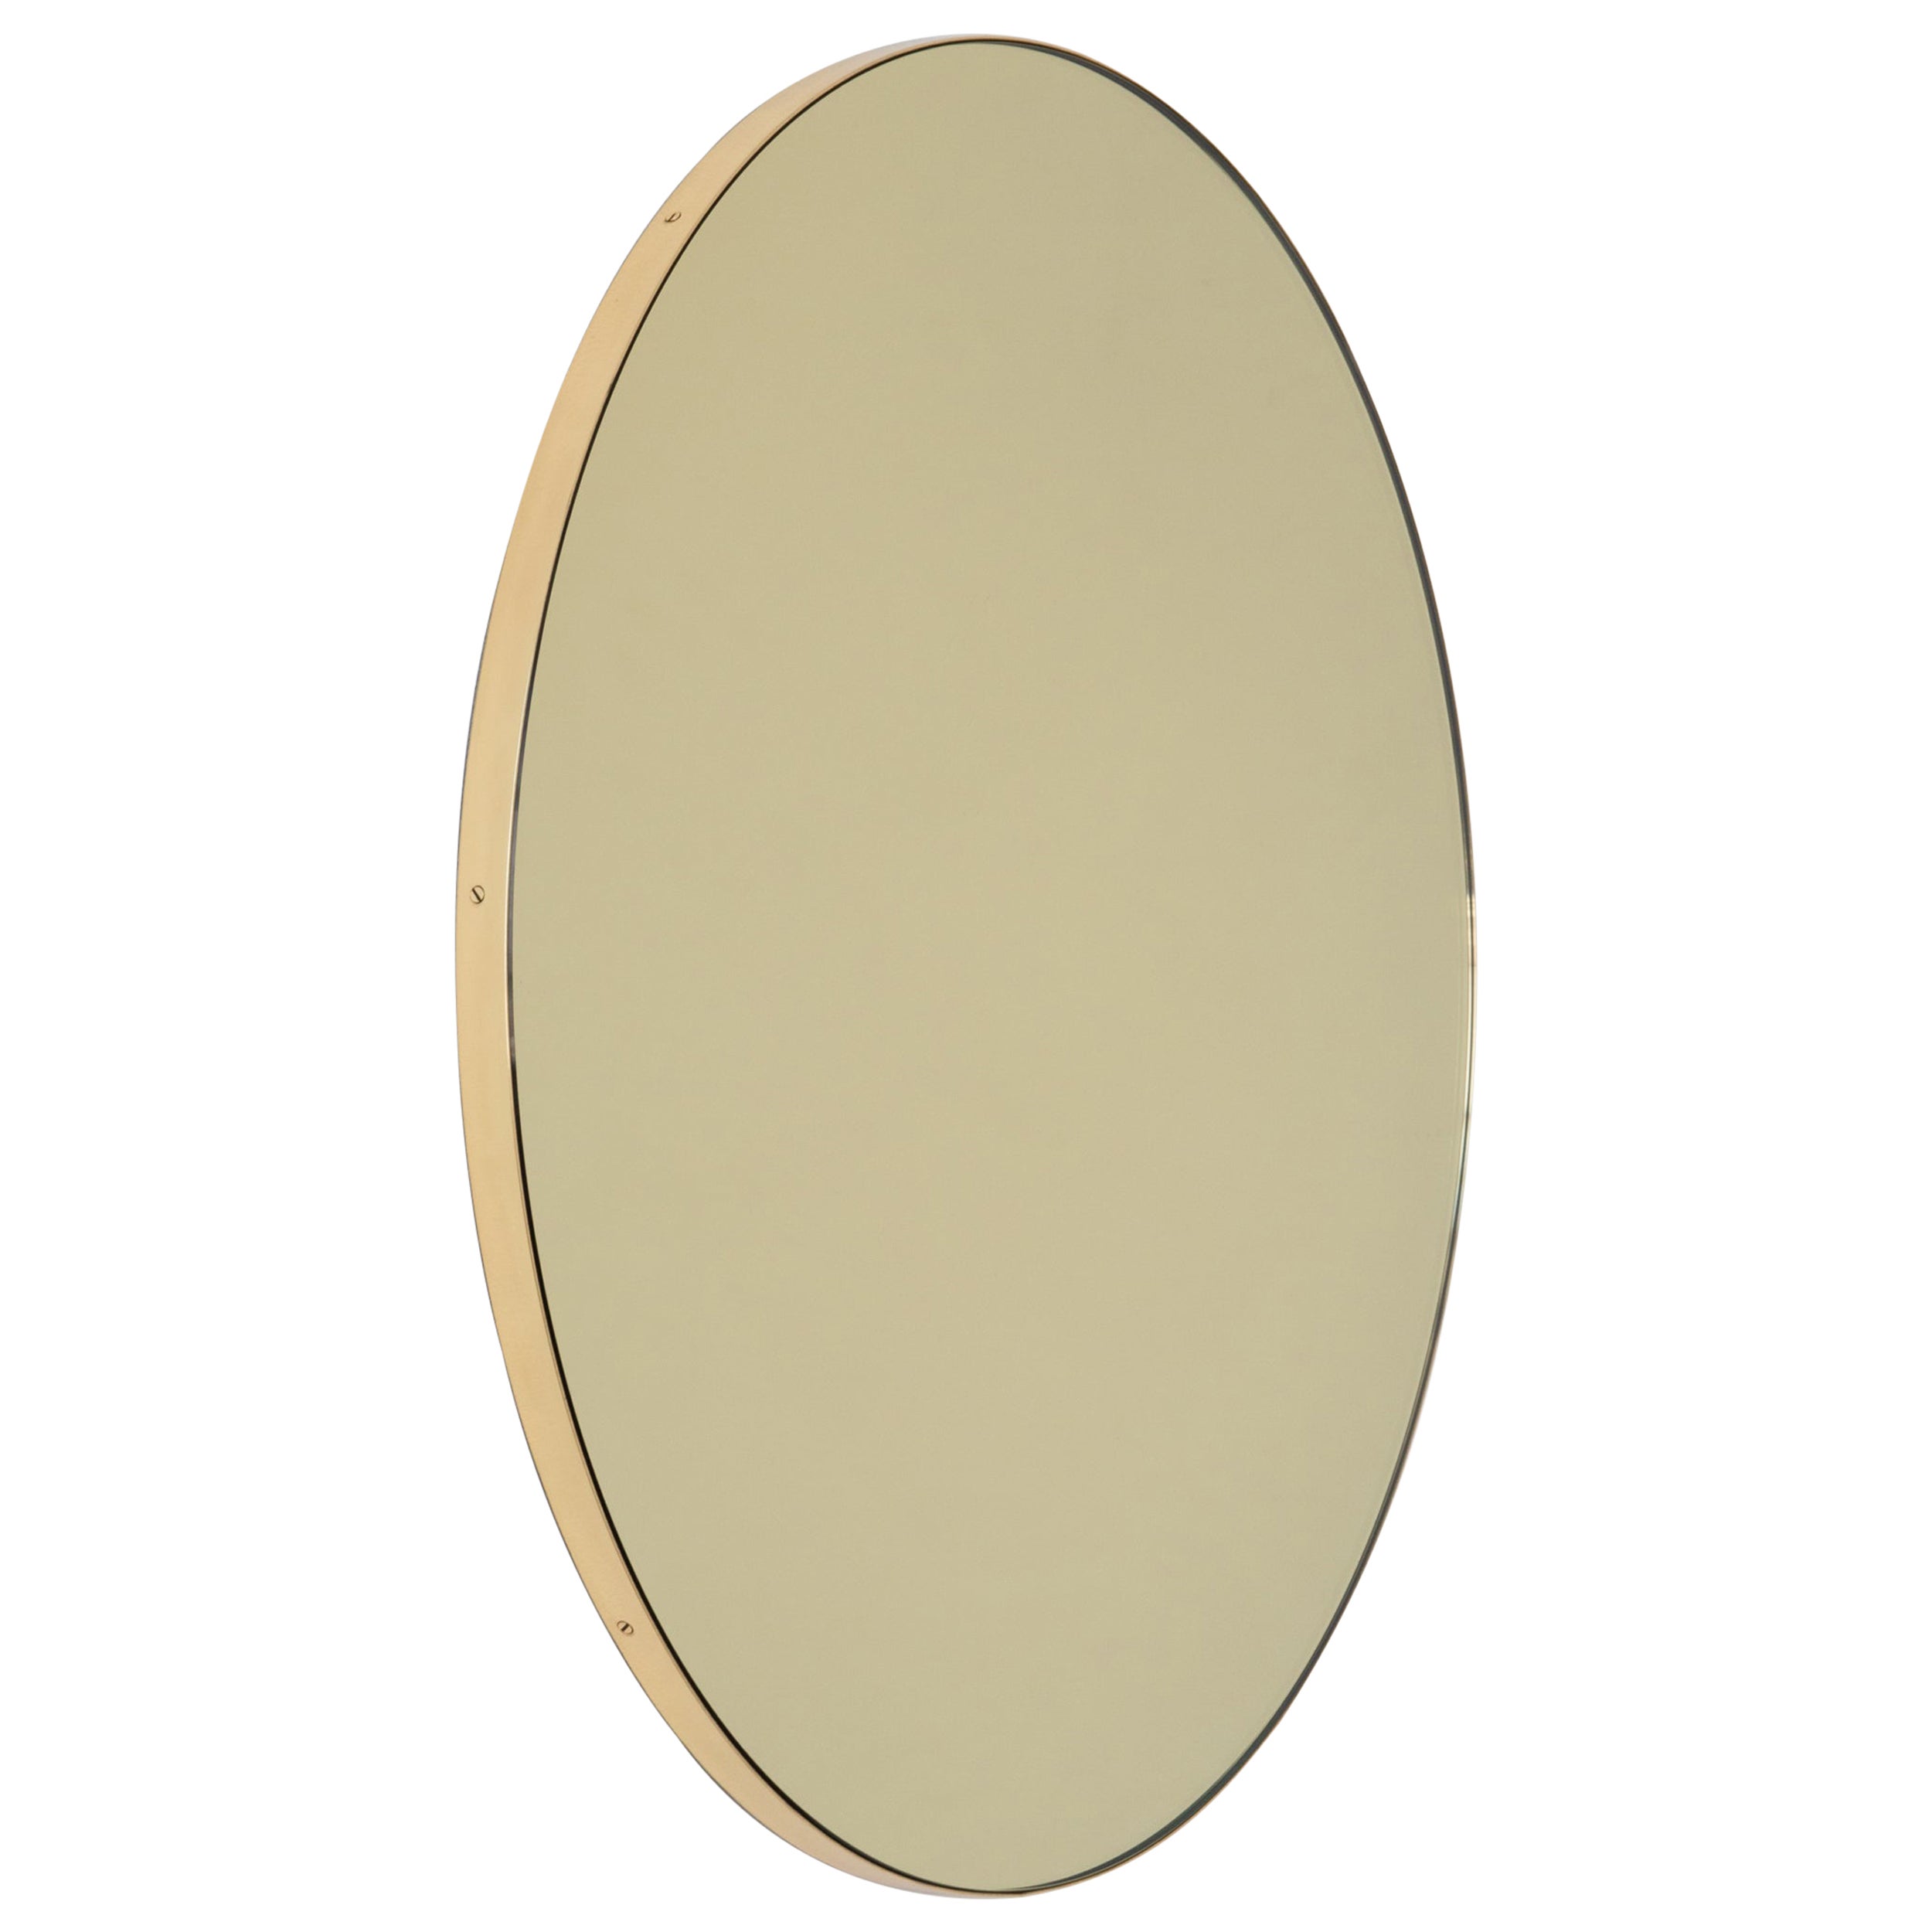 Orbis Gold Tinted Round Minimalist Mirror with Brass Frame, Regular